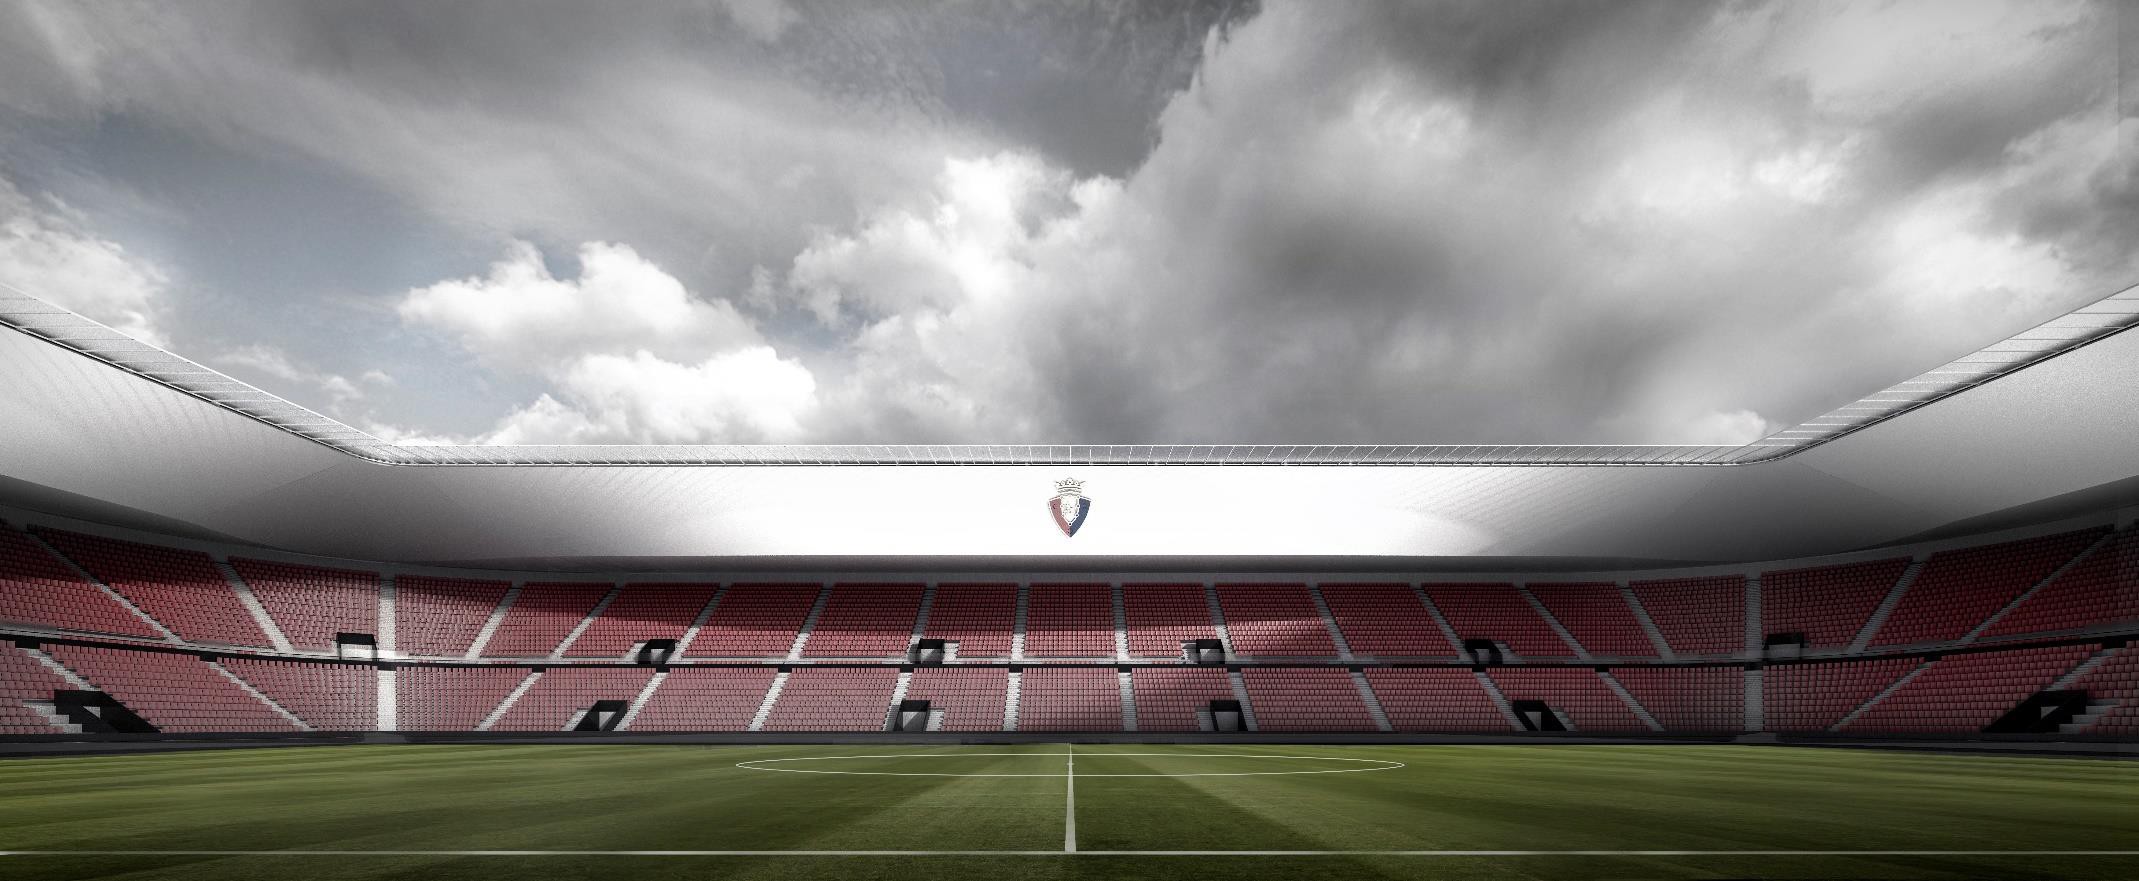 Design: Estadio El Sadar (V) - StadiumDB.com